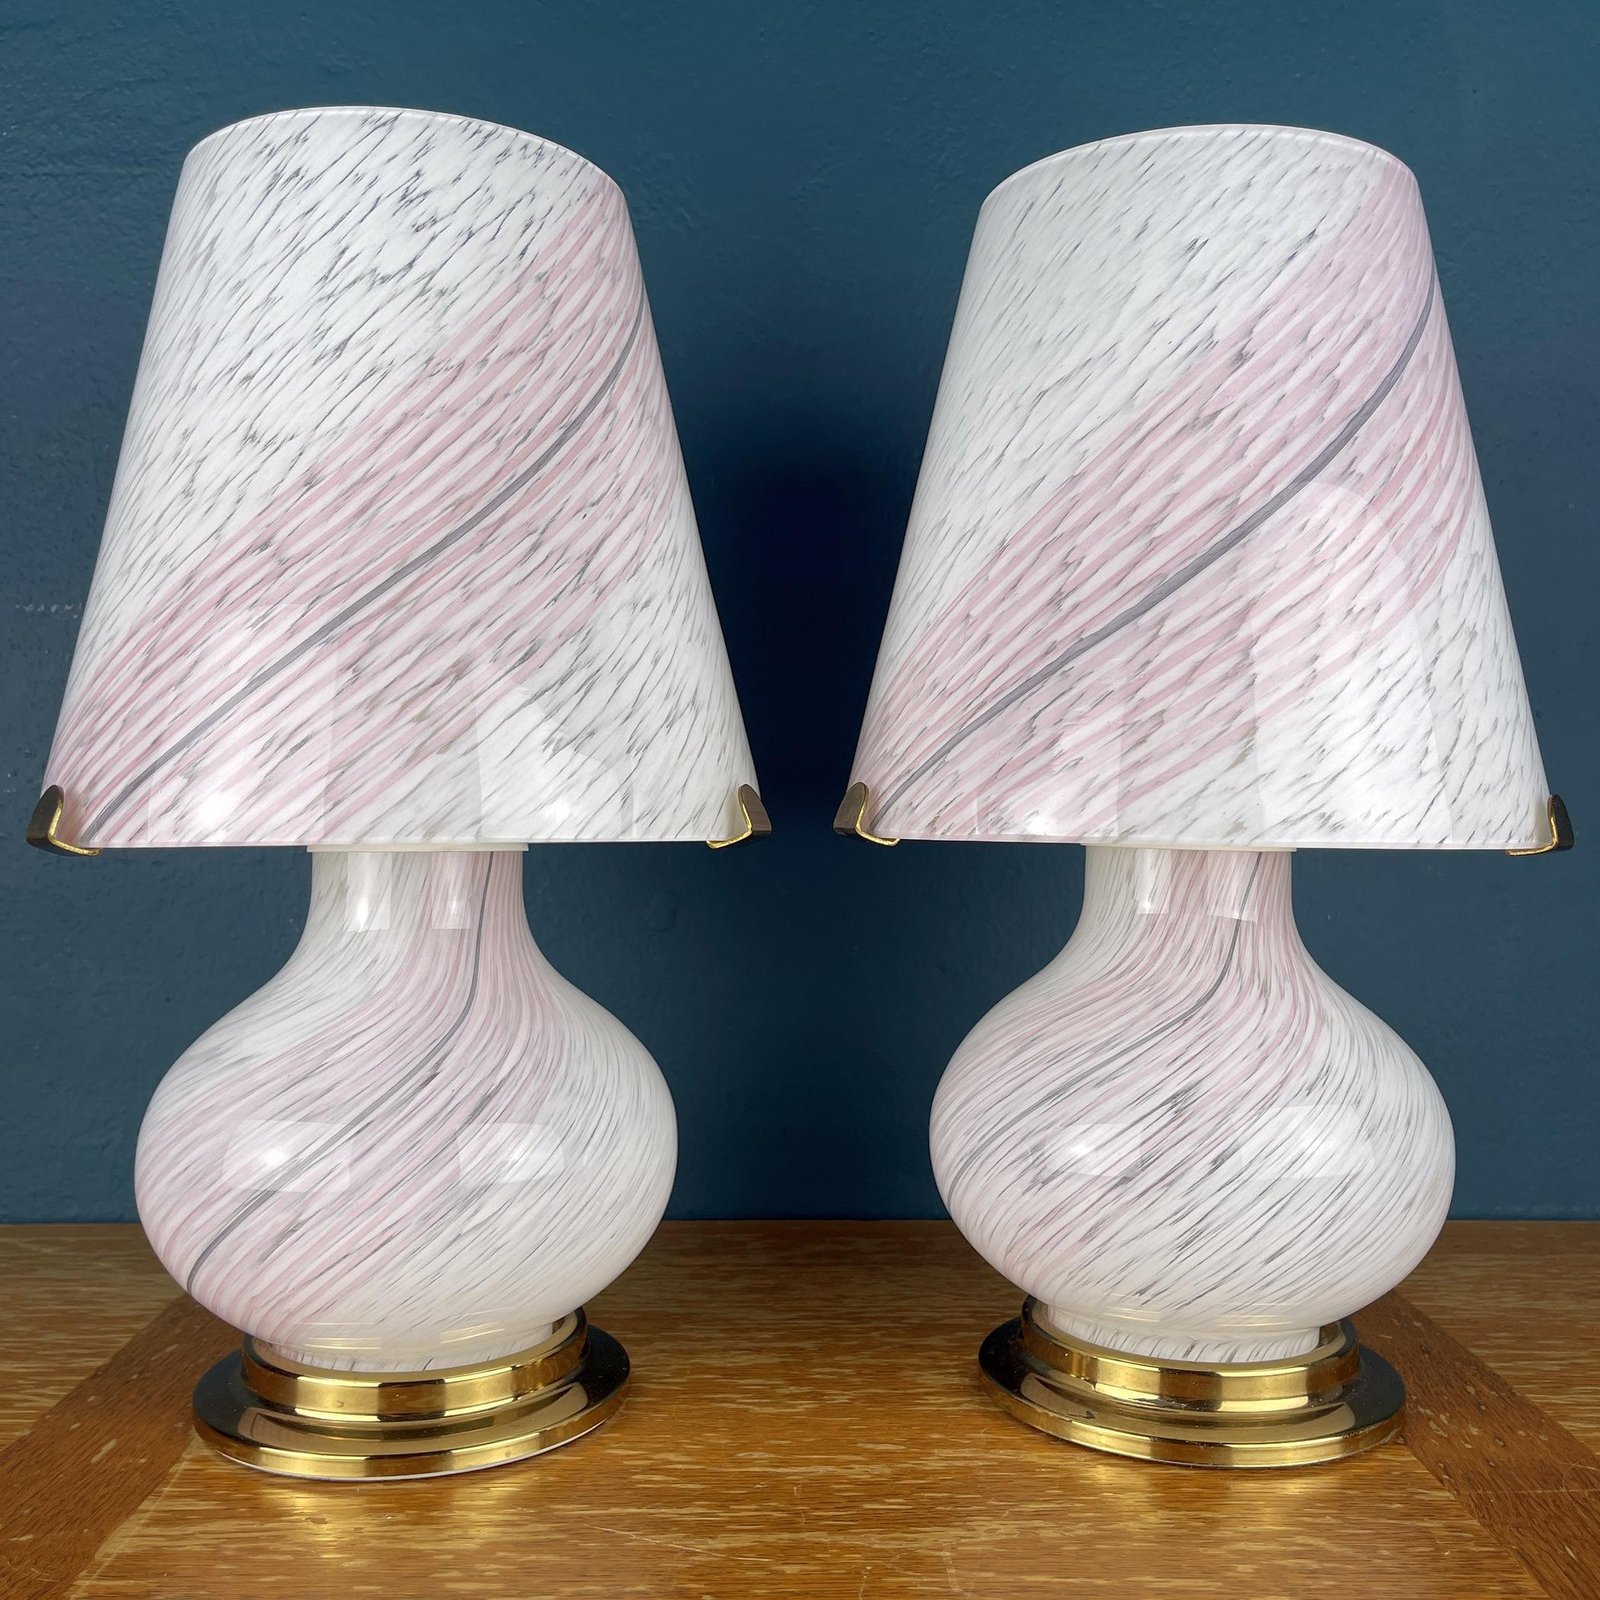 Pair of murano table lamps Mushroom Italy 1970s Italian Modern